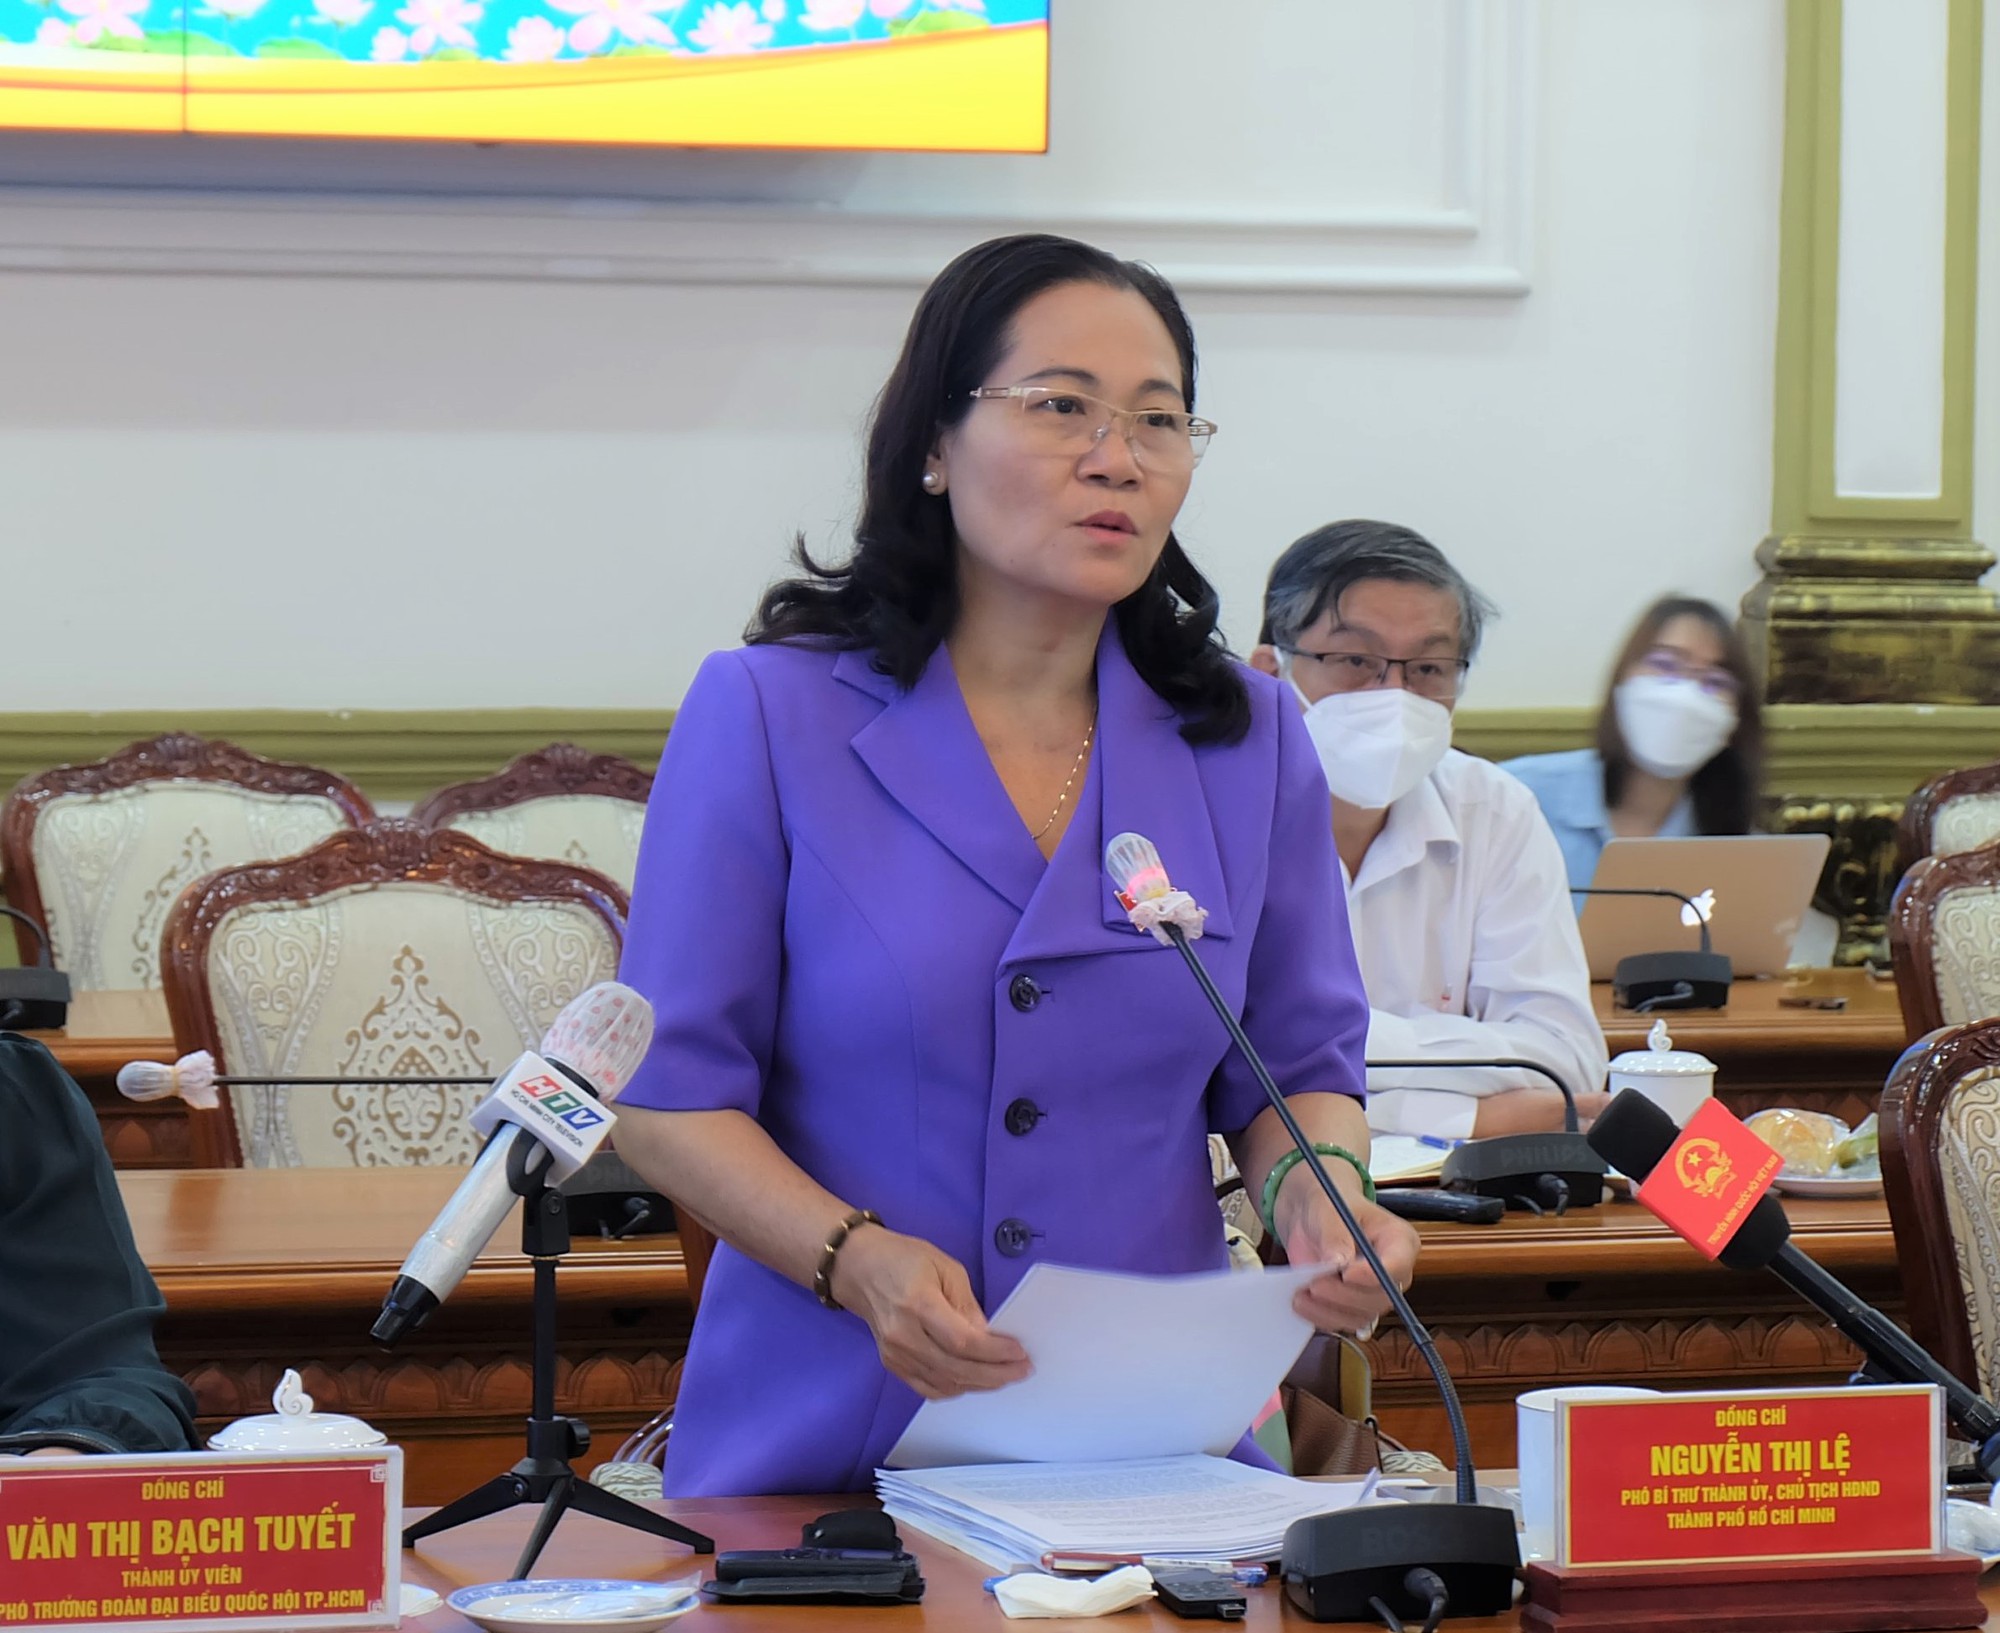 Nghị quyết 54: Bạn quan tâm đến các chính sách, quyết định của Chính phủ Việt Nam về phát triển kinh tế và cải cách hành chính trong nhiệm kỳ 2011–2020? Hãy xem những hình ảnh liên quan đến Nghị quyết 54, giúp bạn hiểu rõ hơn về các chương trình phát triển và cải cách hành chính đang được triển khai ở Việt Nam.